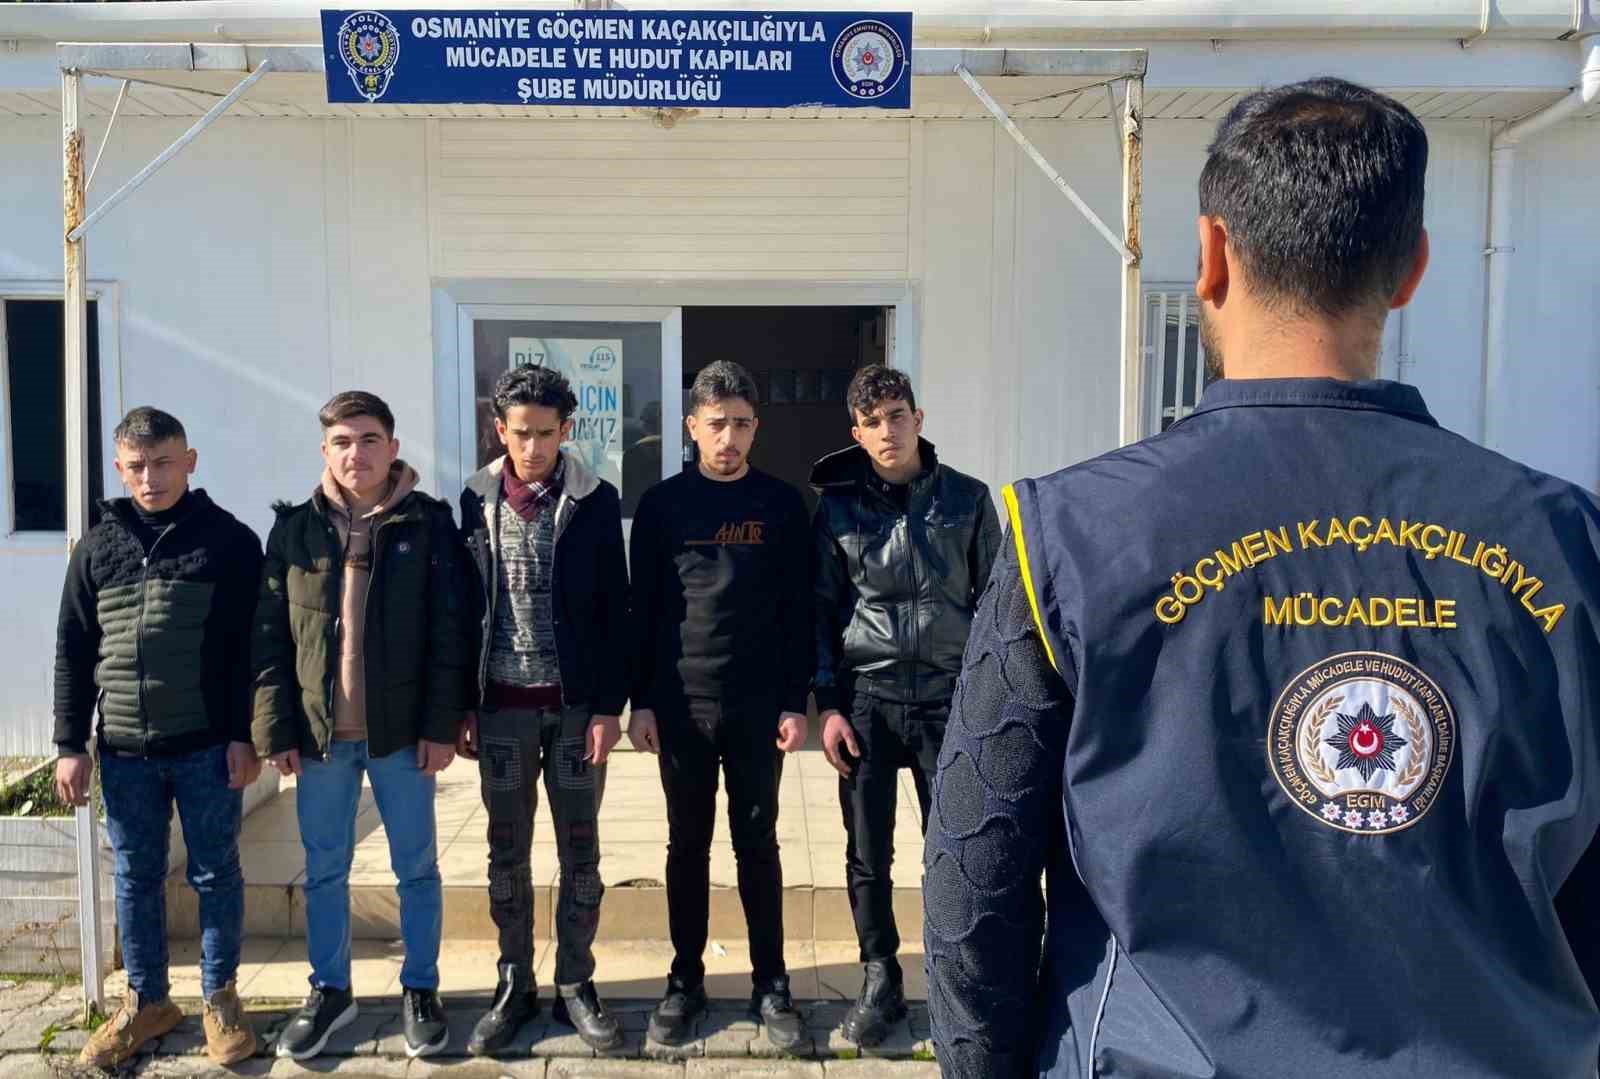 Osmaniye’de 5 düzensiz göçmen yakalandı